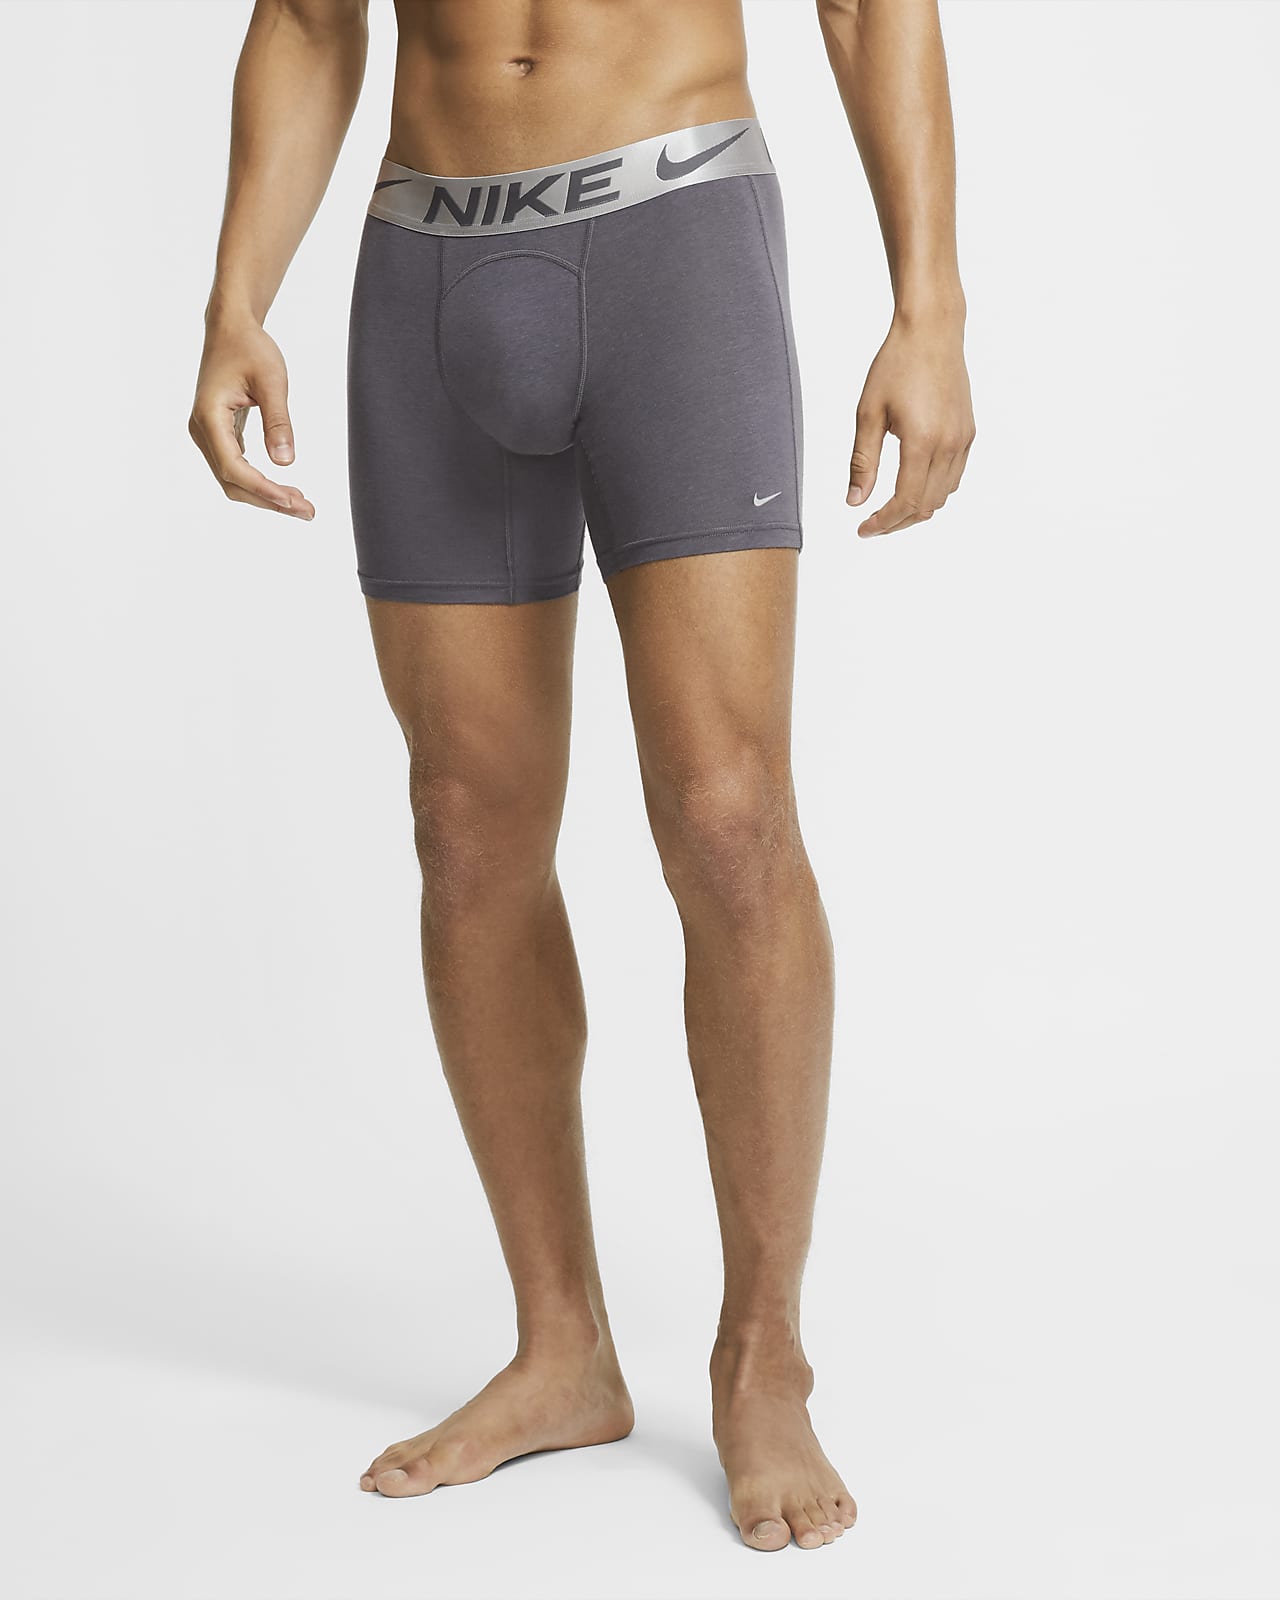 Nike Luxe Cotton Modal Men's Boxer 